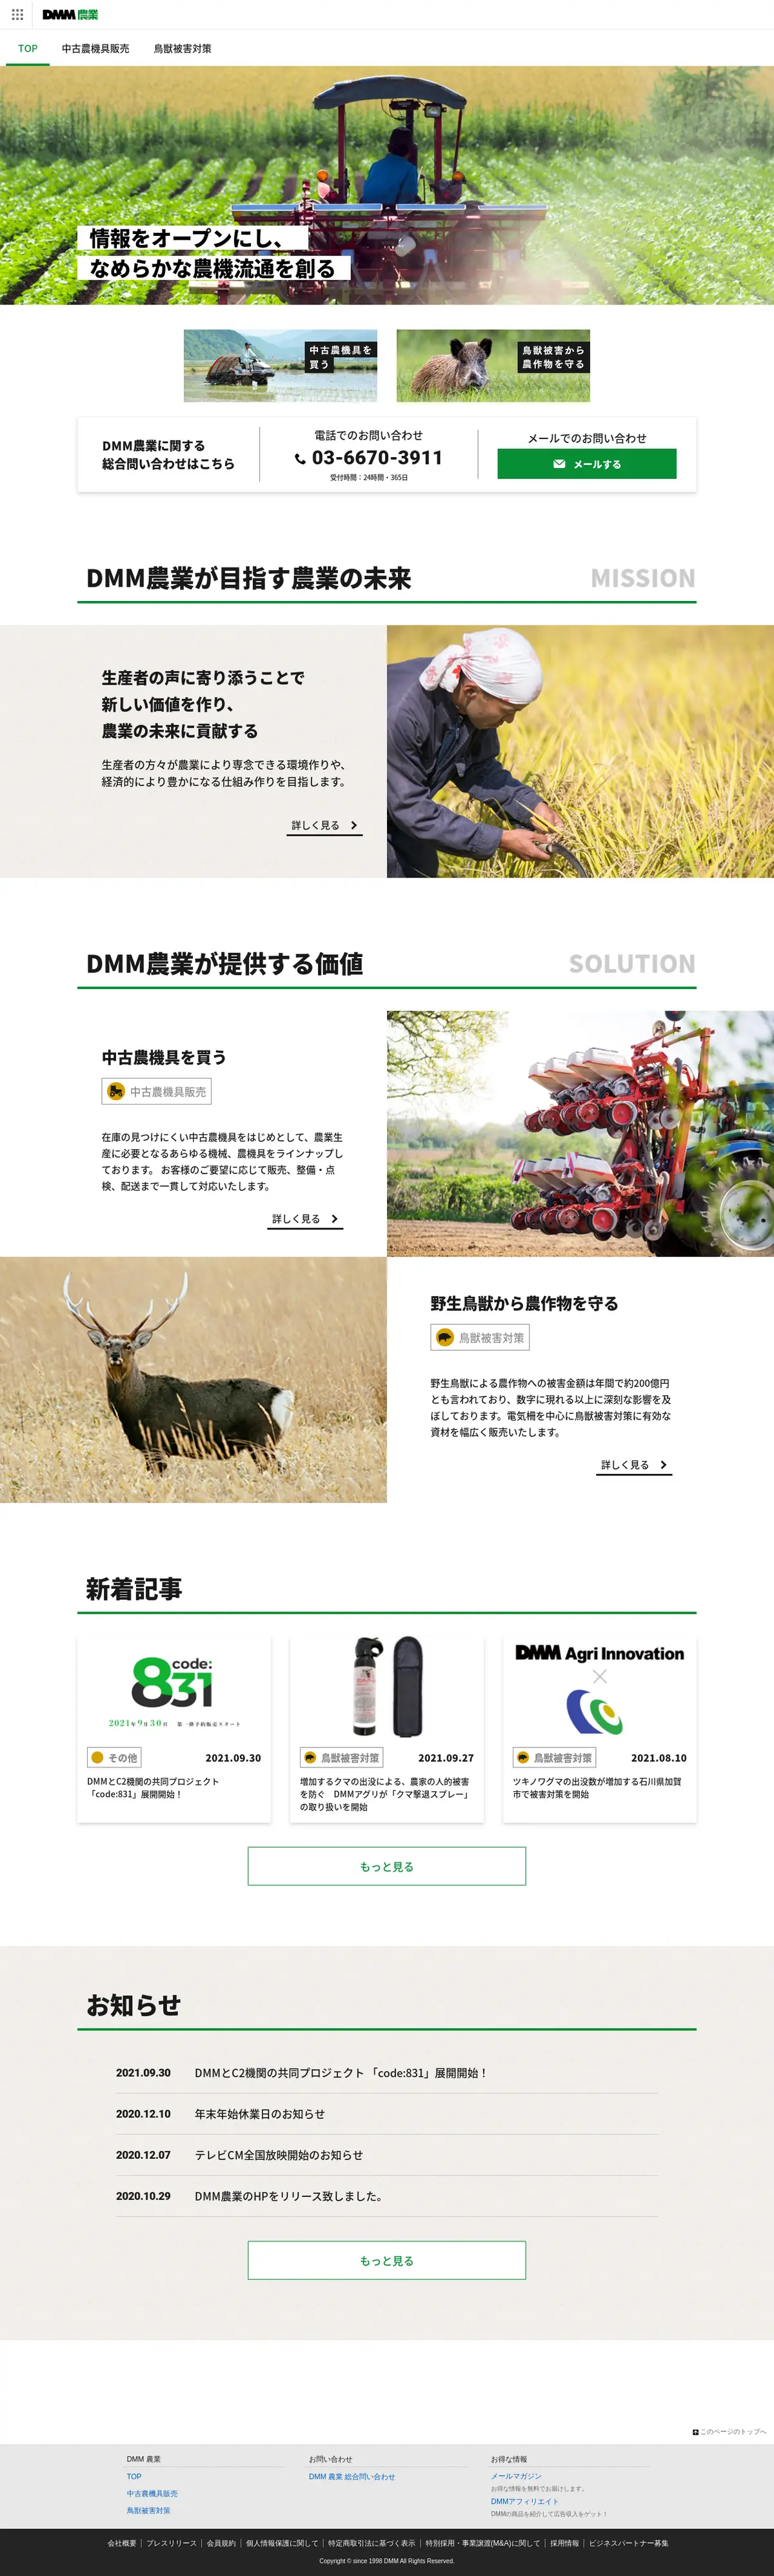 キャプチャ画面 会社名:DMM.com Groupプロジェクト名:DMM 農業 画面名:全国トップ デバイス名:PCカテゴリ:農林水産タグ:全国トップ,PC